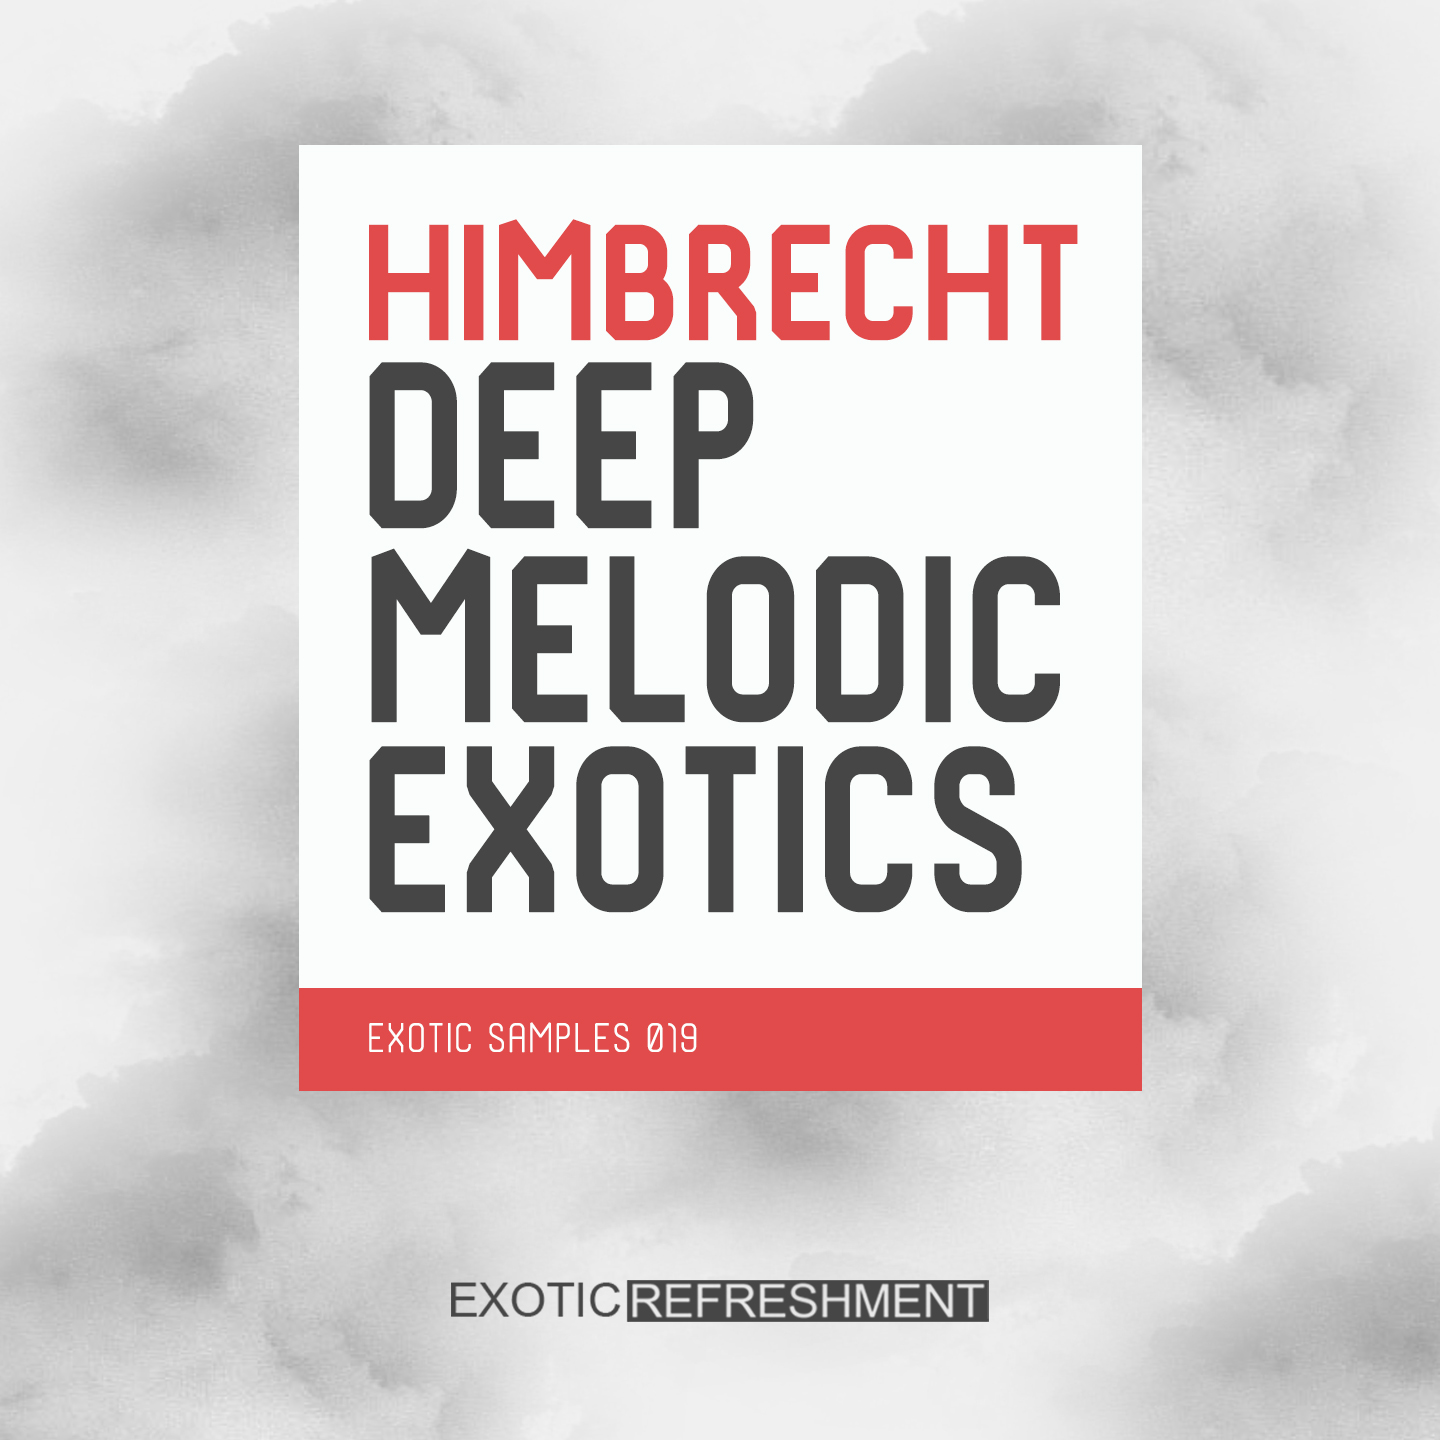 Himbrecht Deep Melodic Exotics